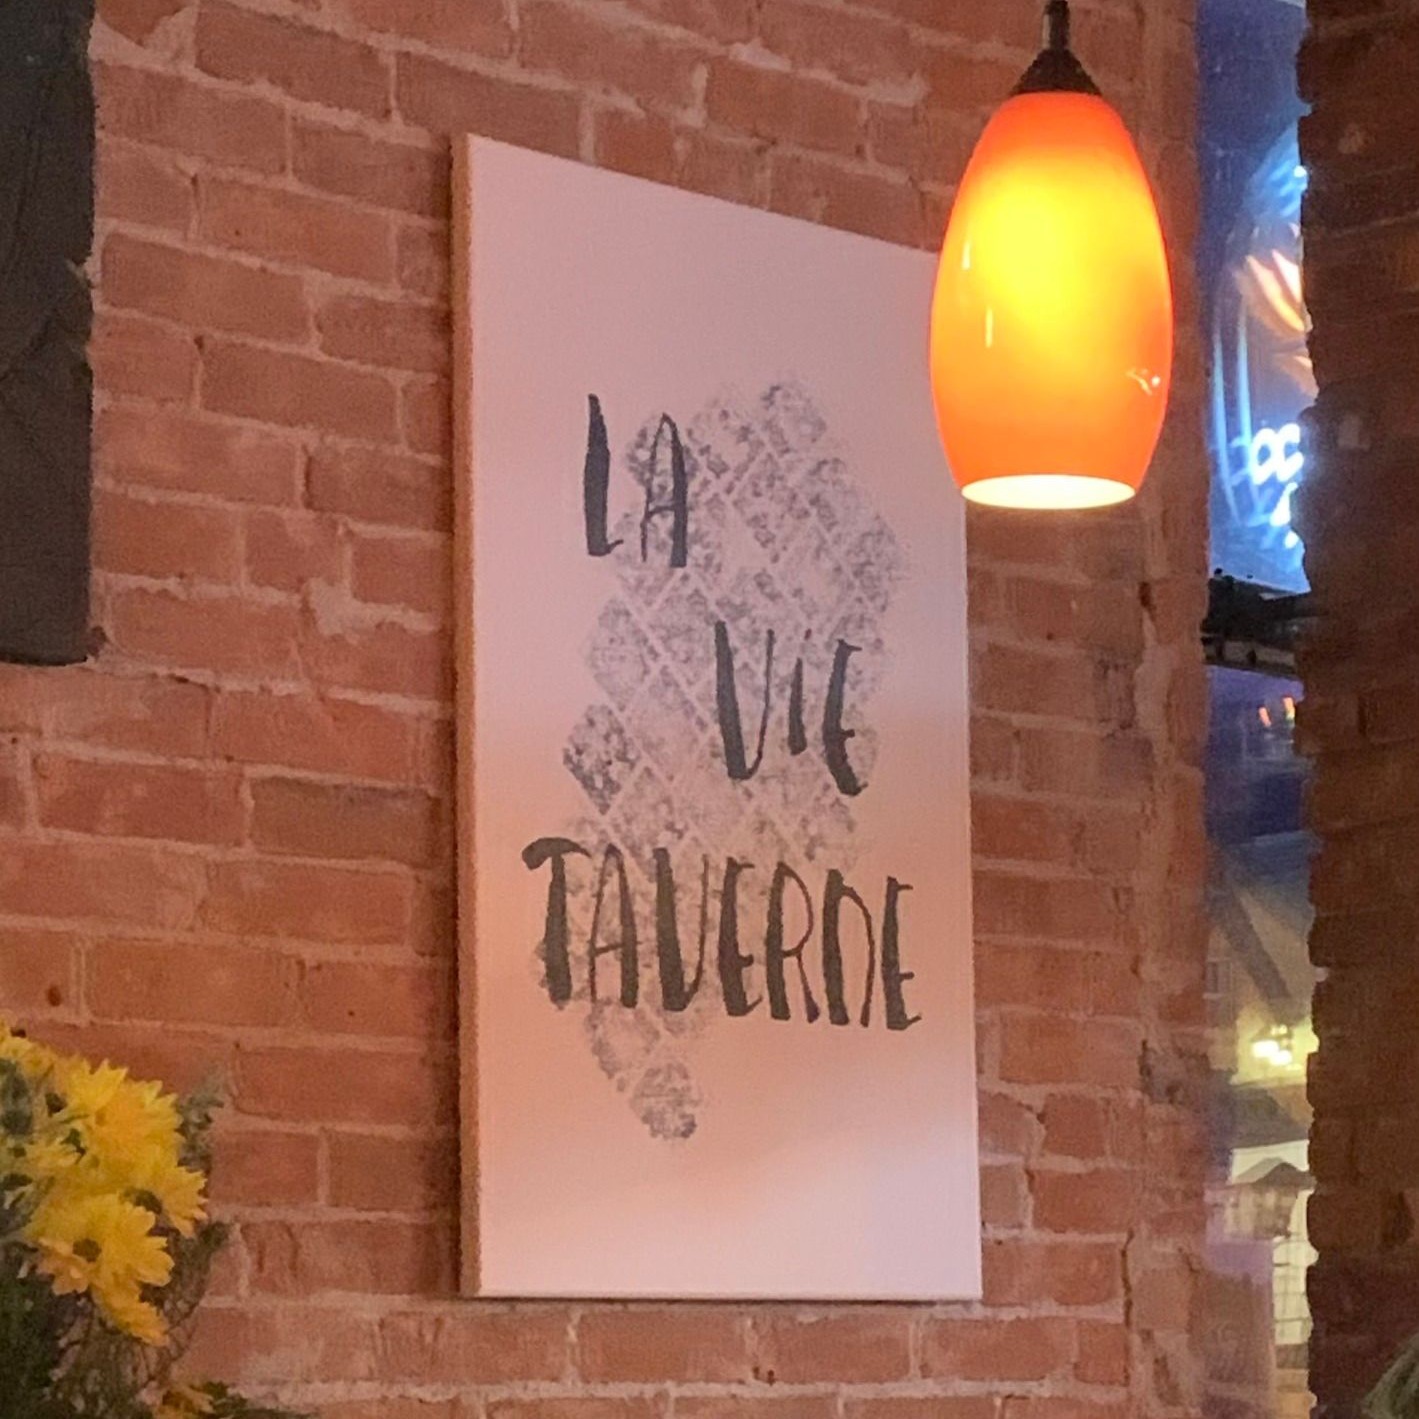 La Vie Taverne